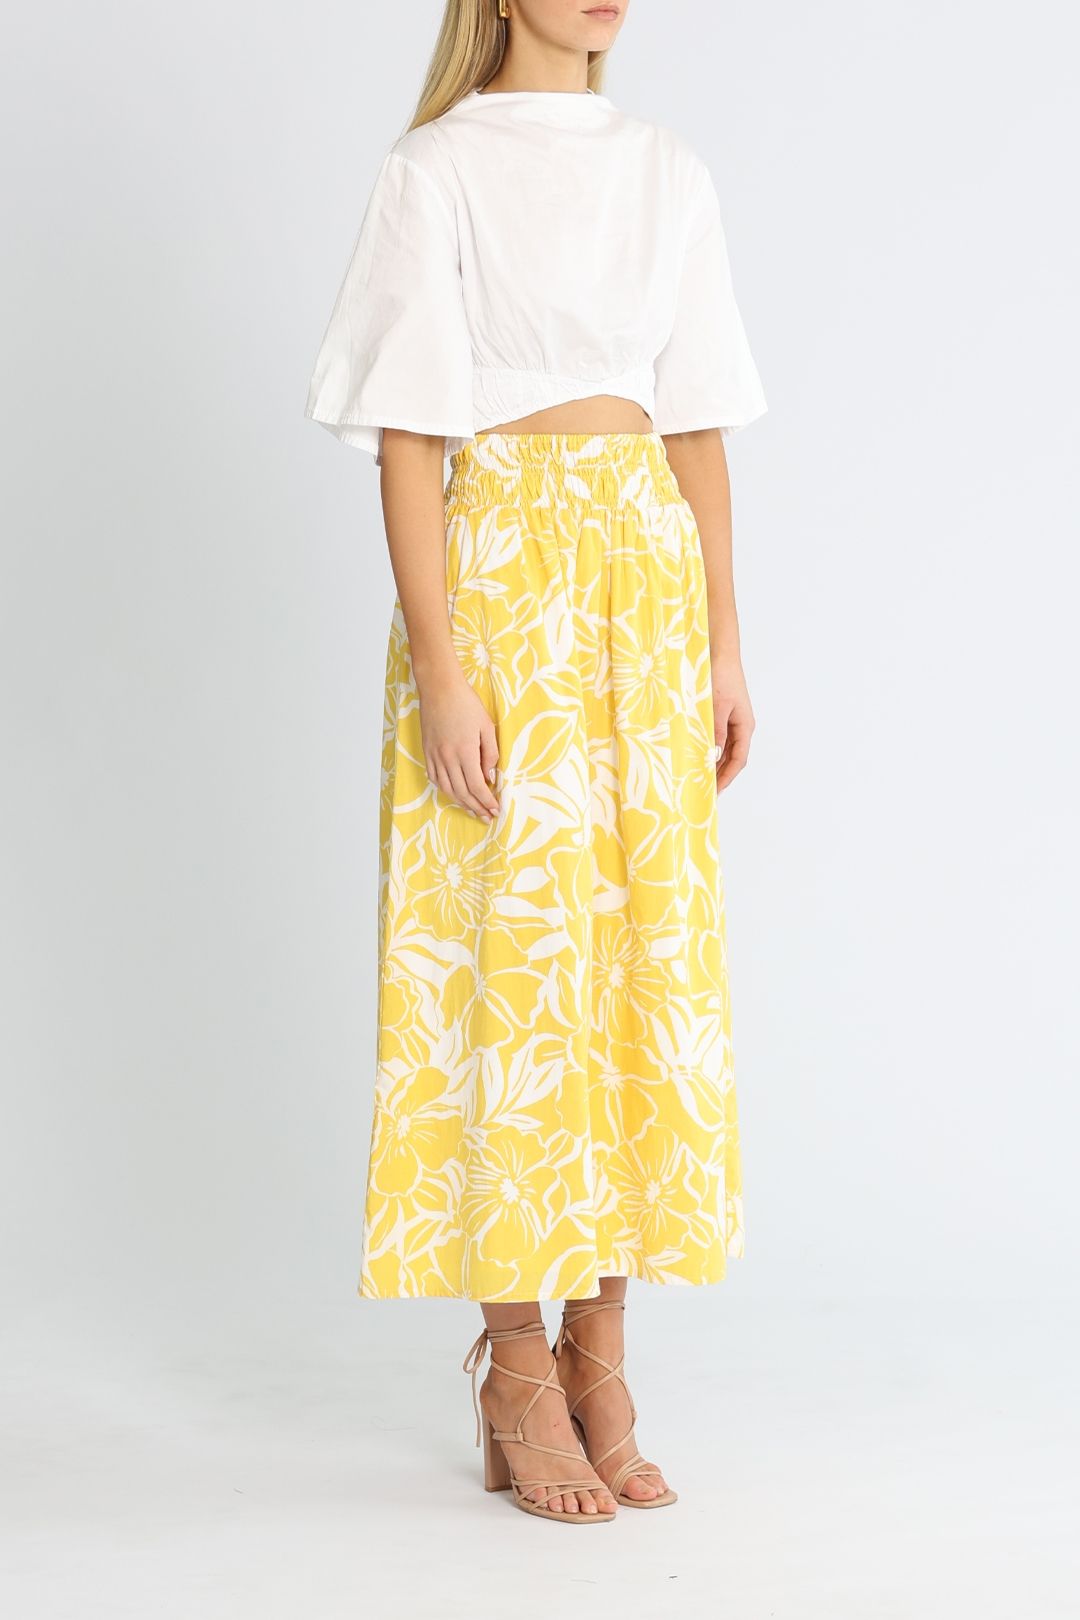 Faithfull Kiera Skirt Yellow floral